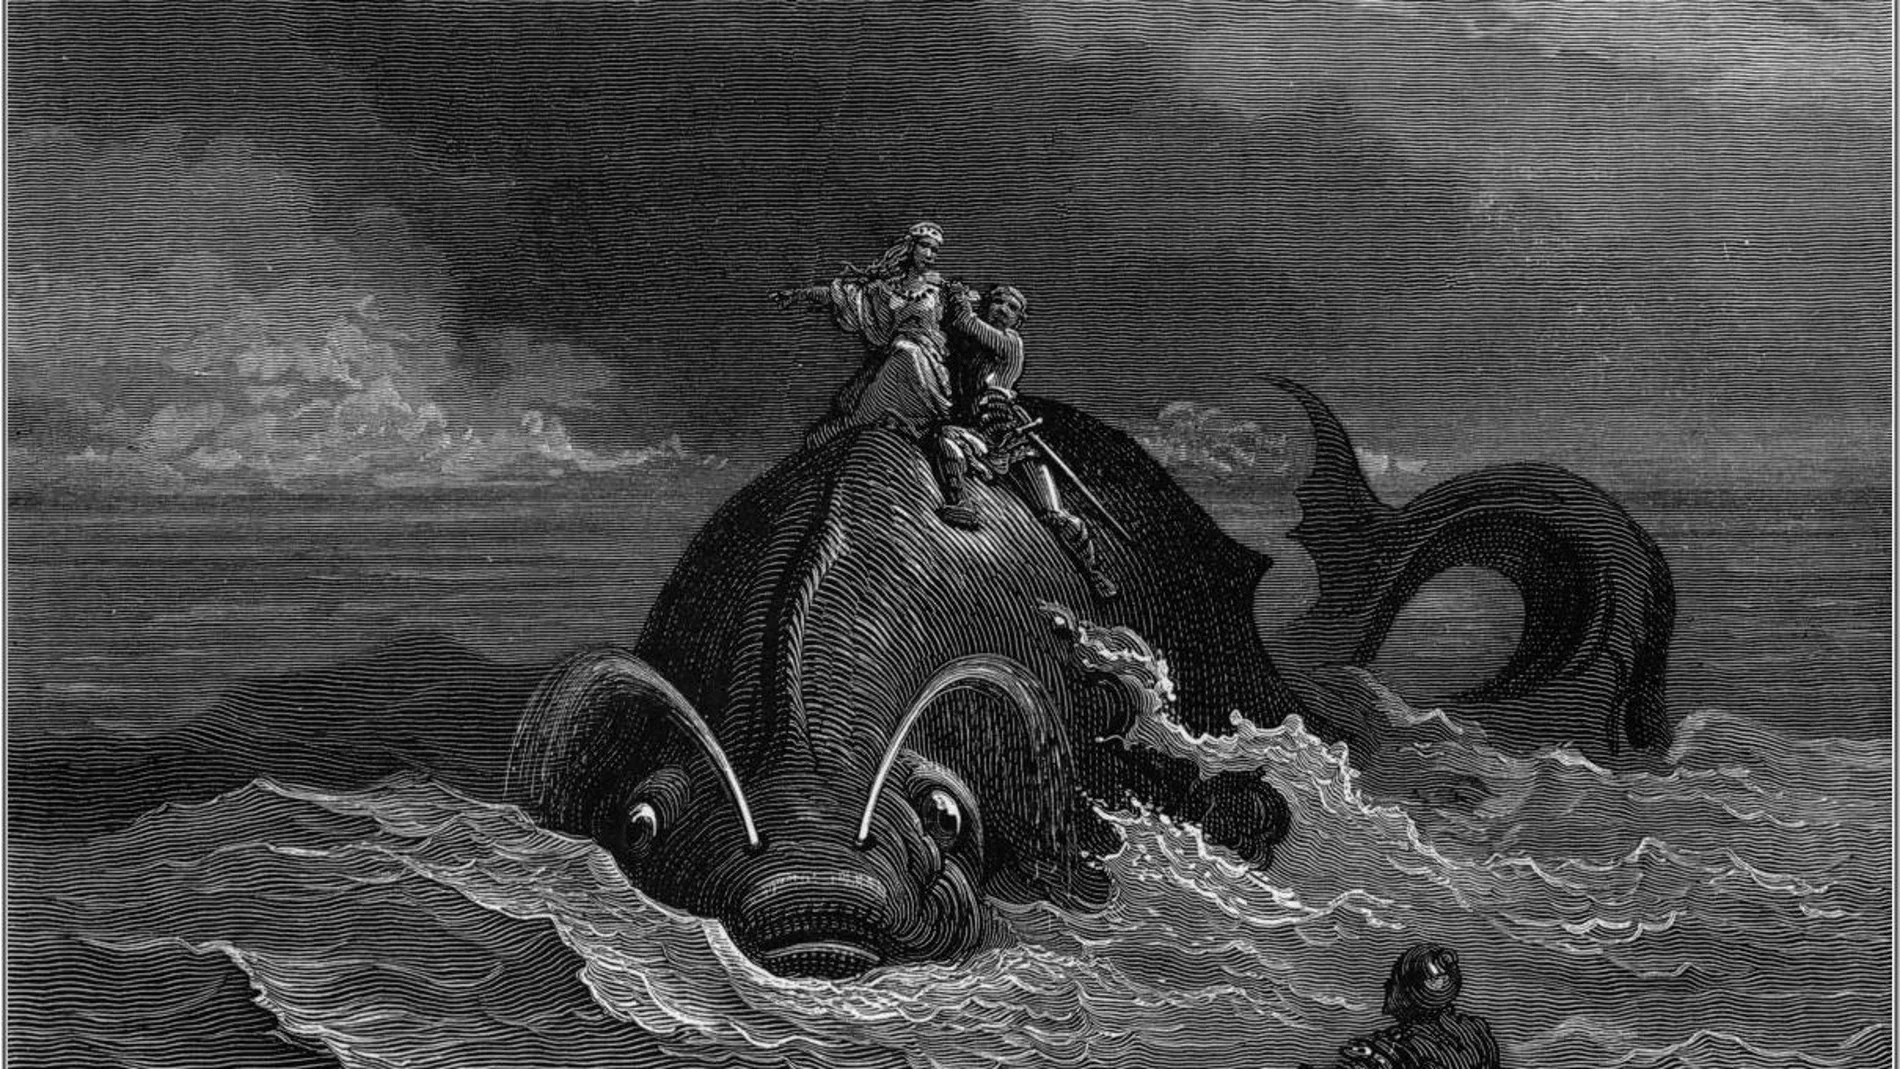 Ilustración de un monstruo marino por Gustave Doré